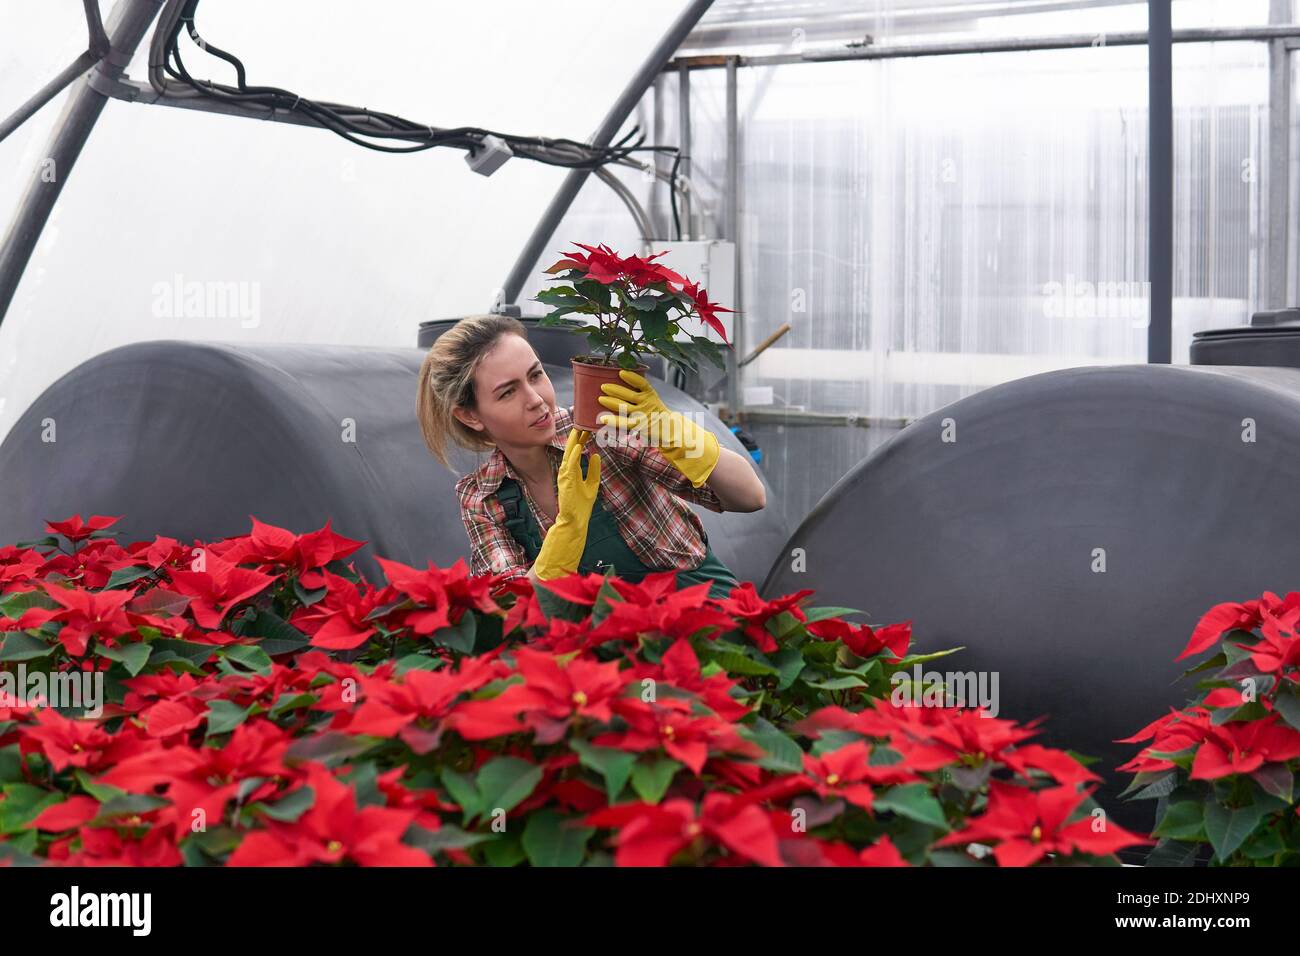 mujer jardinera en un invernadero con poinsettias rojas examina cuidadosamente una de las macetas de flores, sujetándola en sus manos Foto de stock